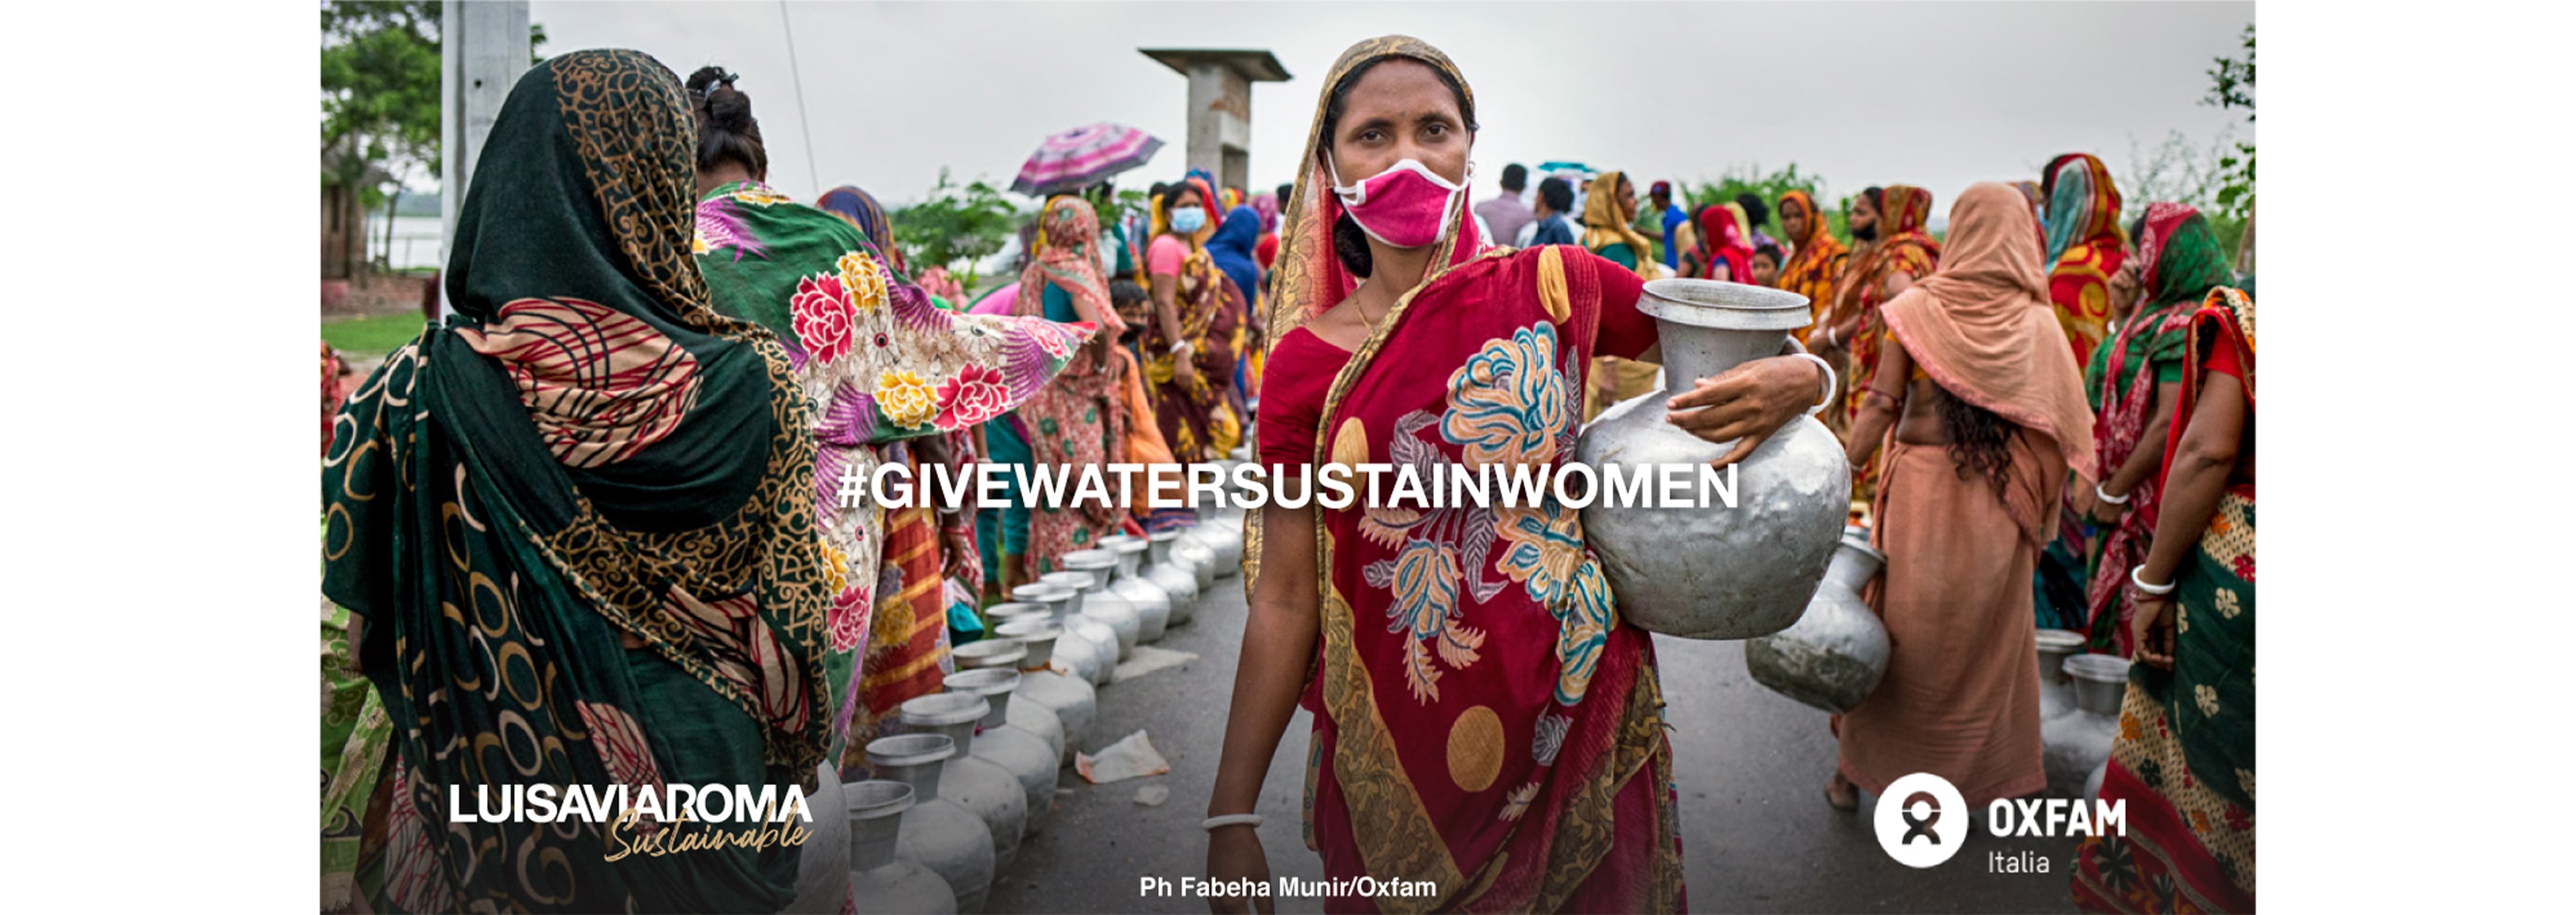 LVRSustainable & Oxfam Italien spenden Wasser & unterstützen Frauen: Die Geschichte von Dorothy